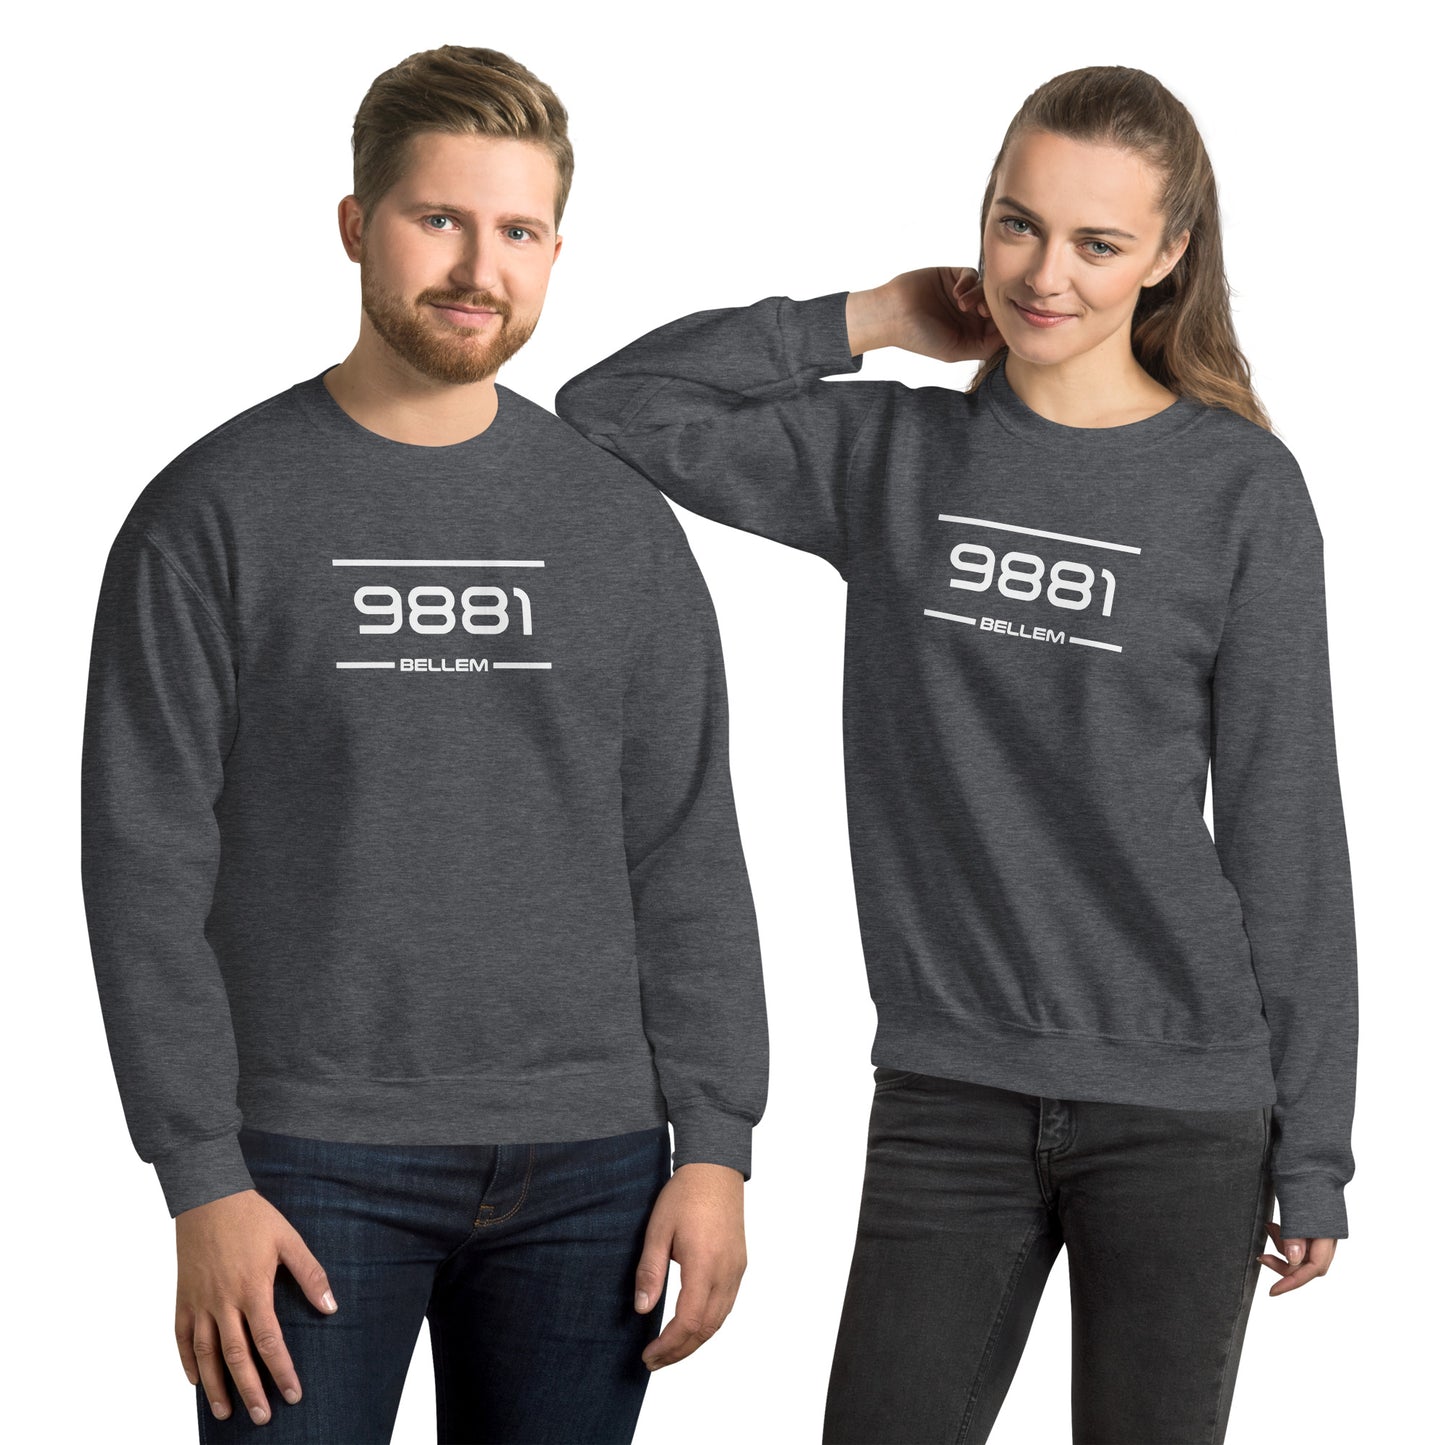 Sweater - 9881 - Bellem (M/V)